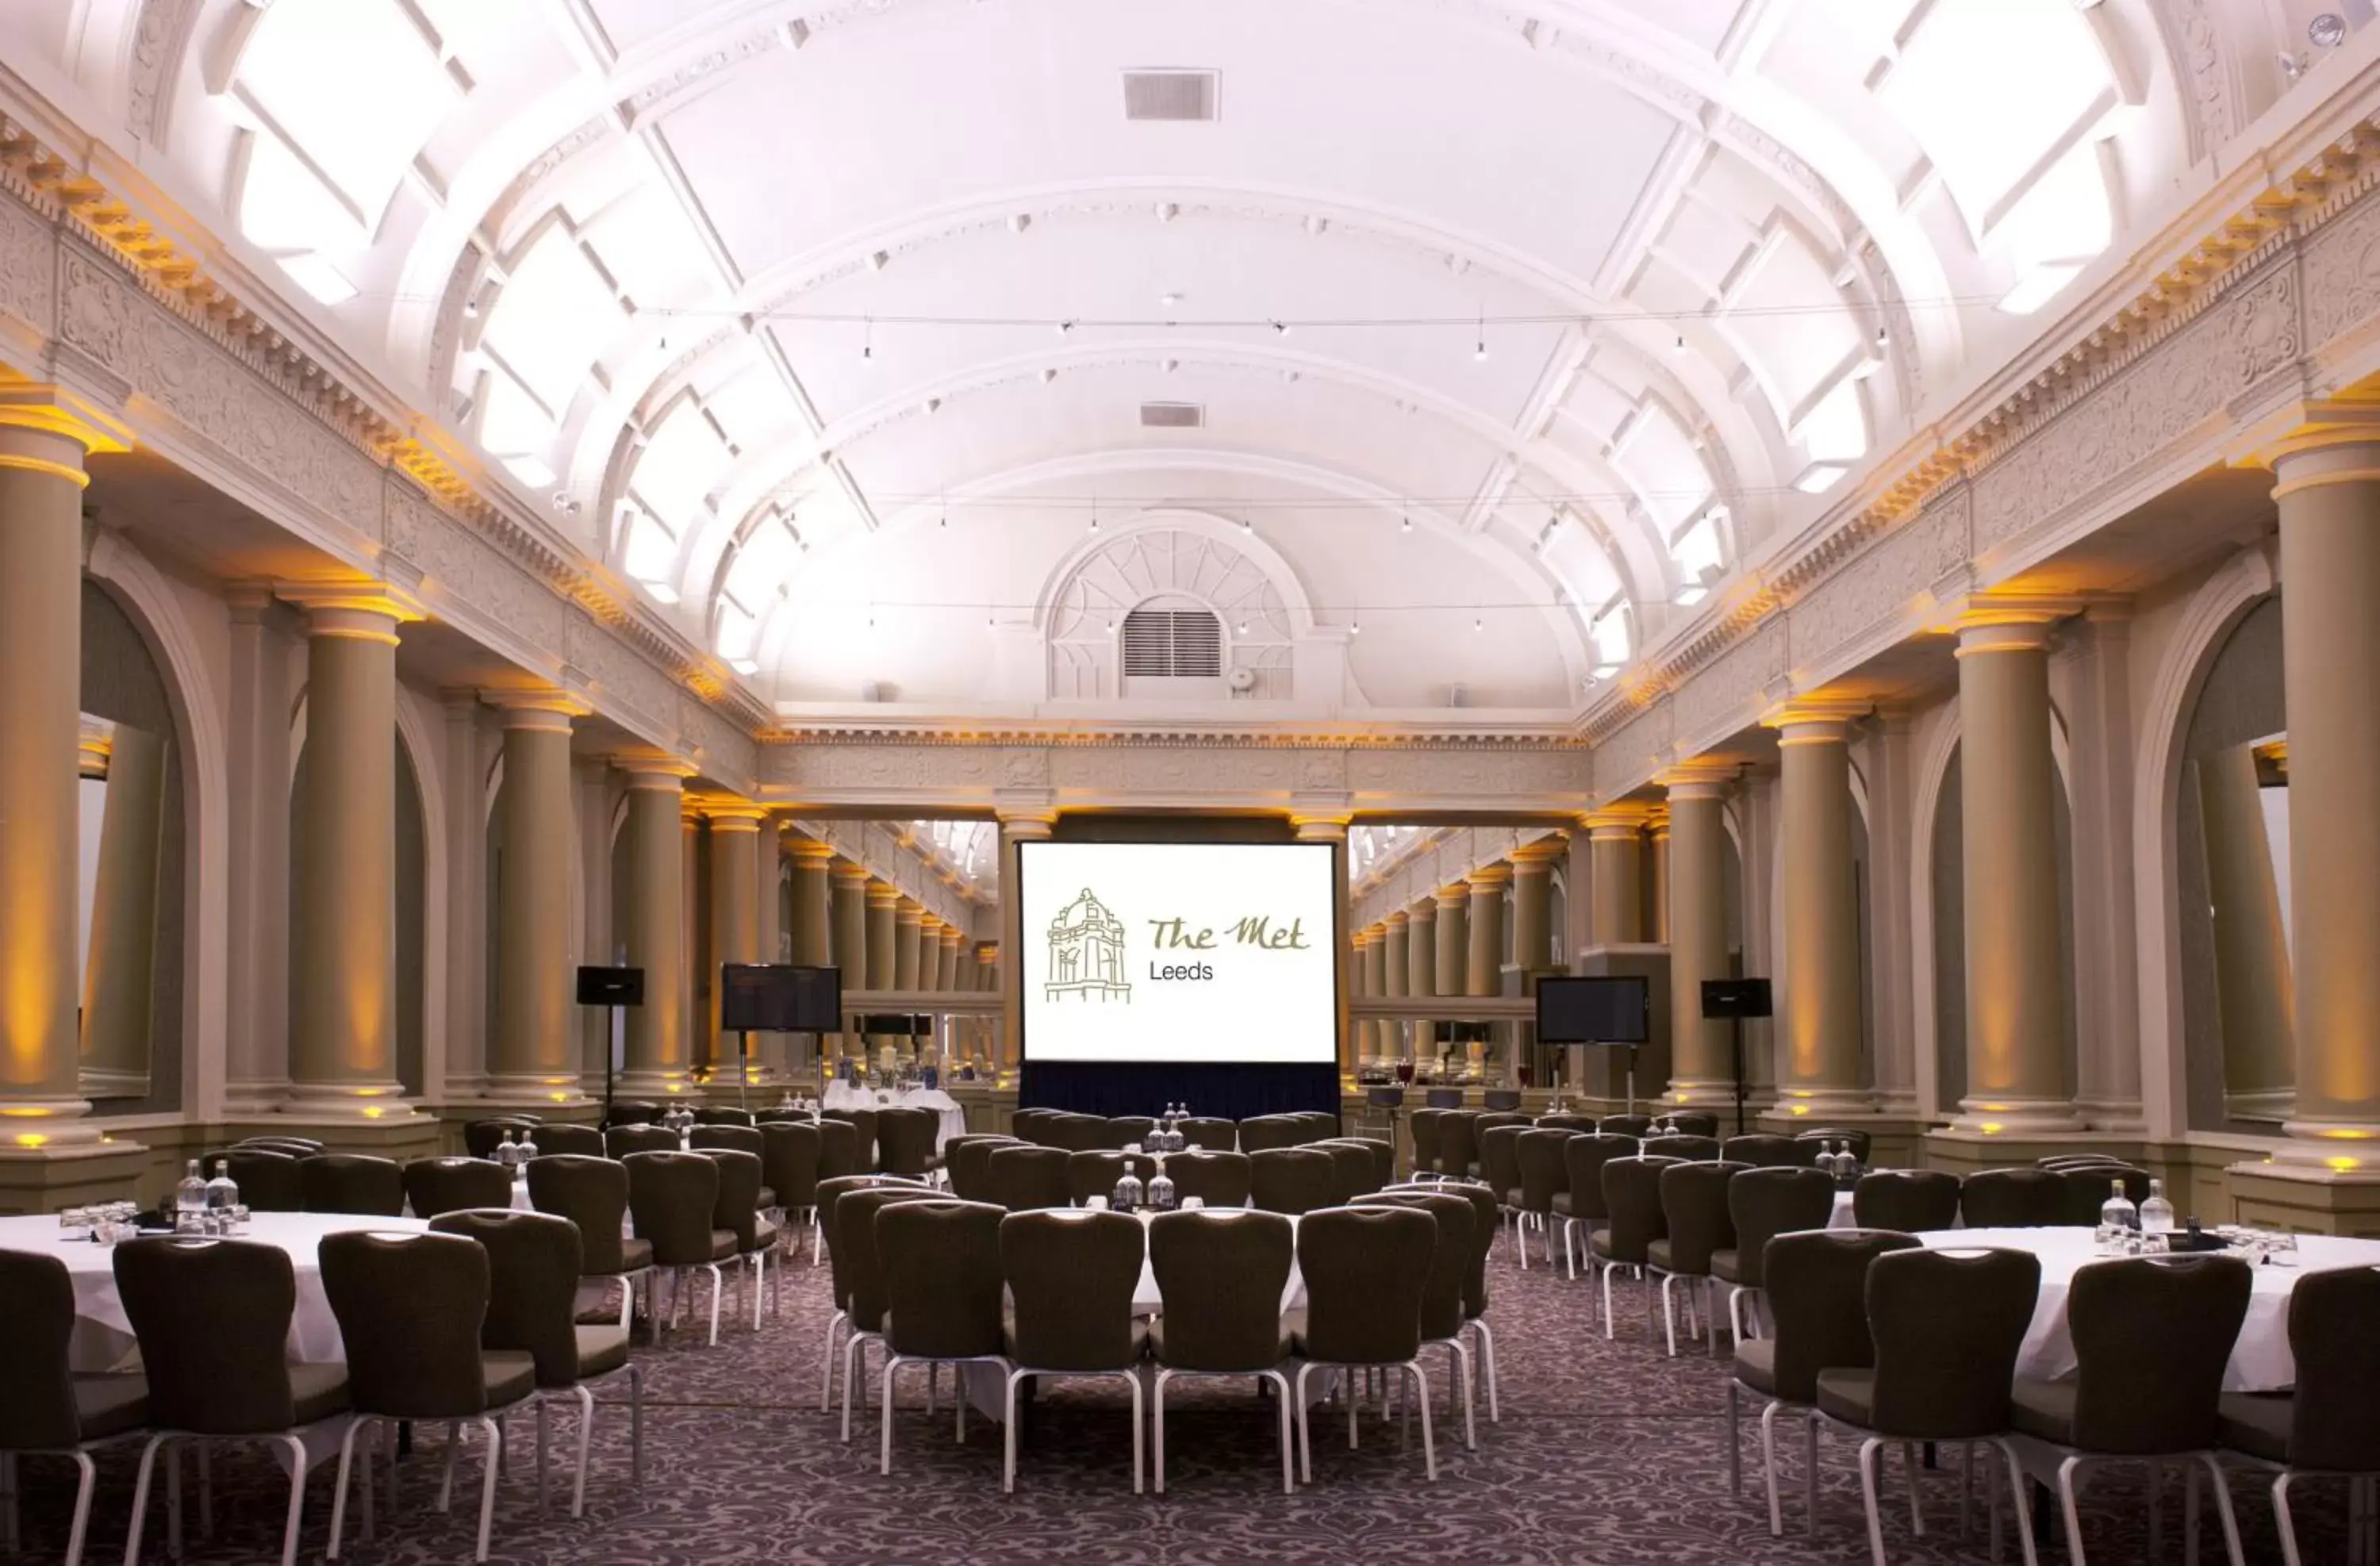 Banquet/Function facilities in The Met Hotel Leeds